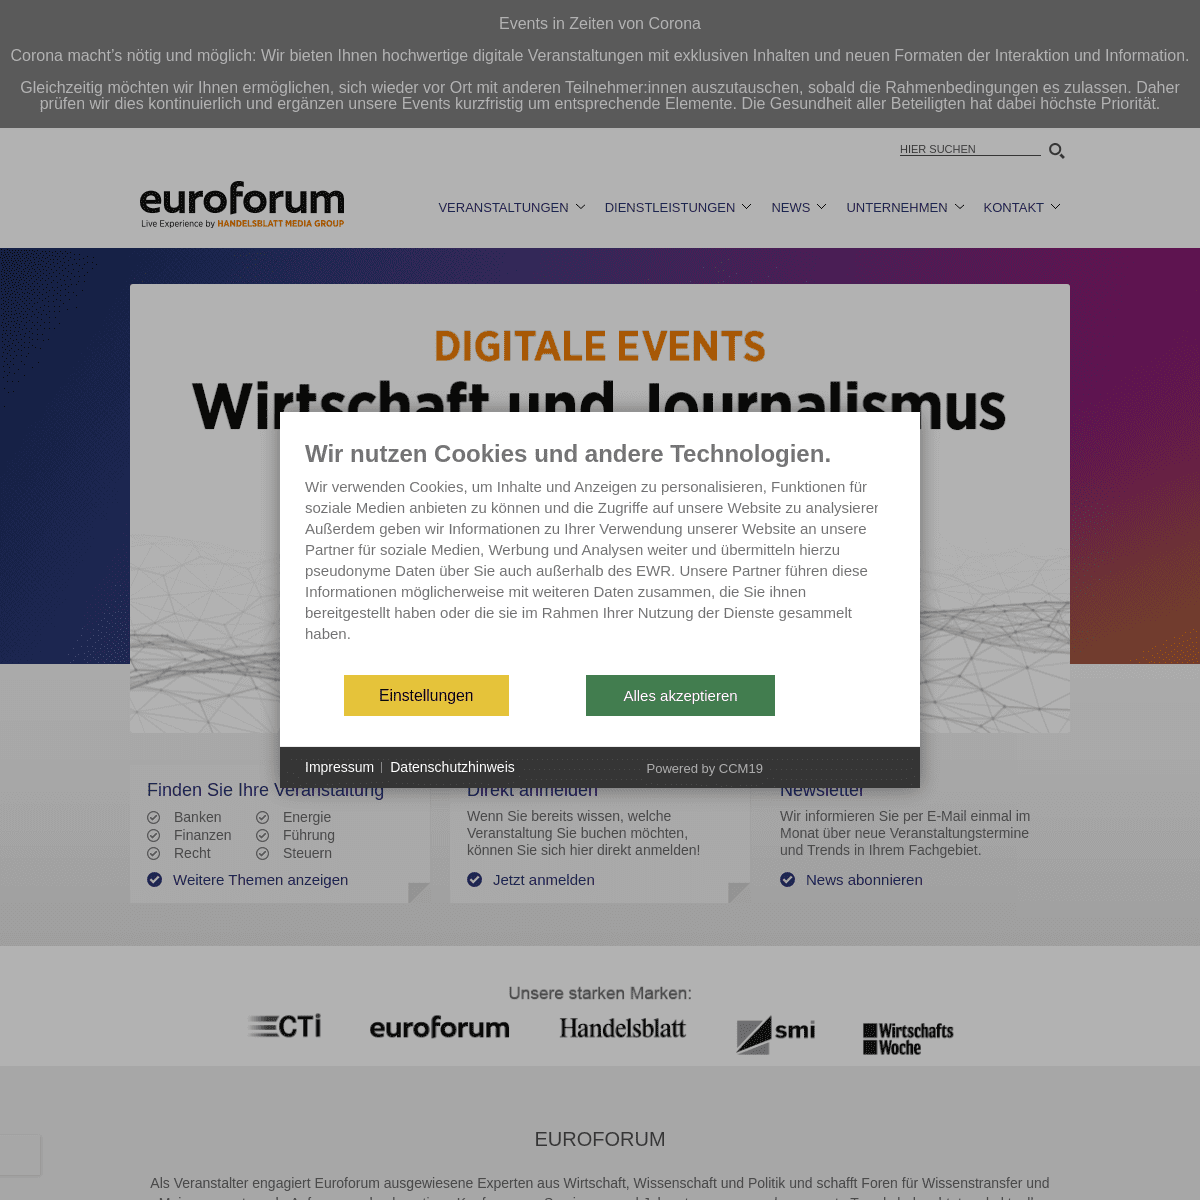 A complete backup of https://euroforum.de